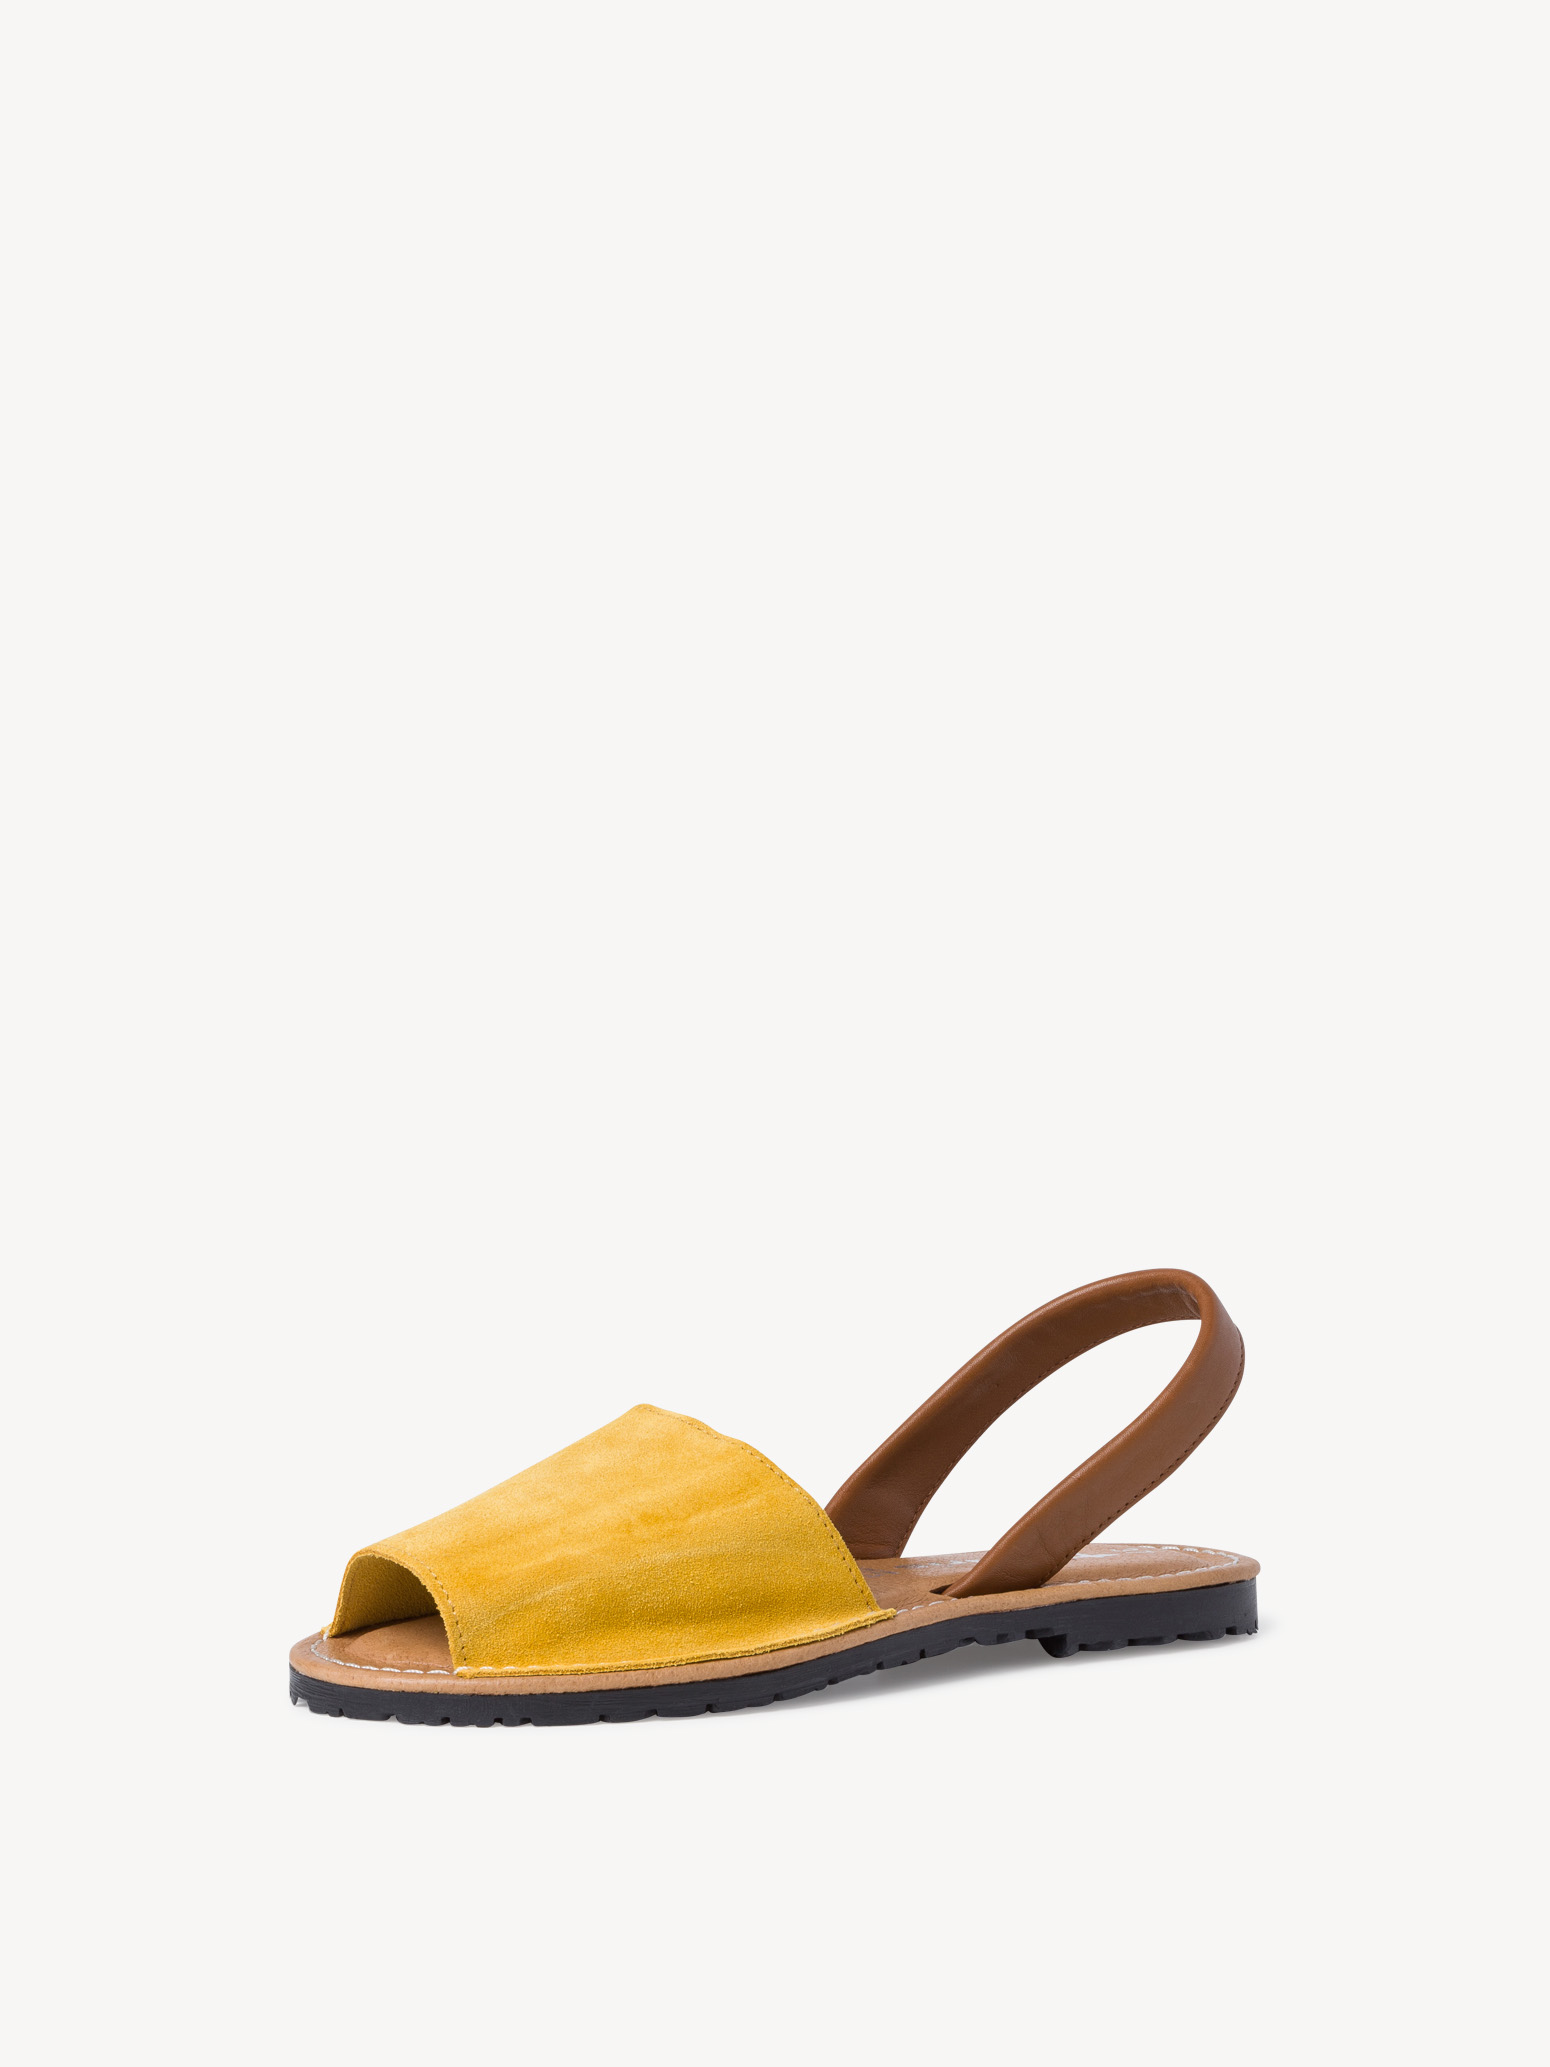 Туфли летние открытые жен. (желтый) - изображение №1